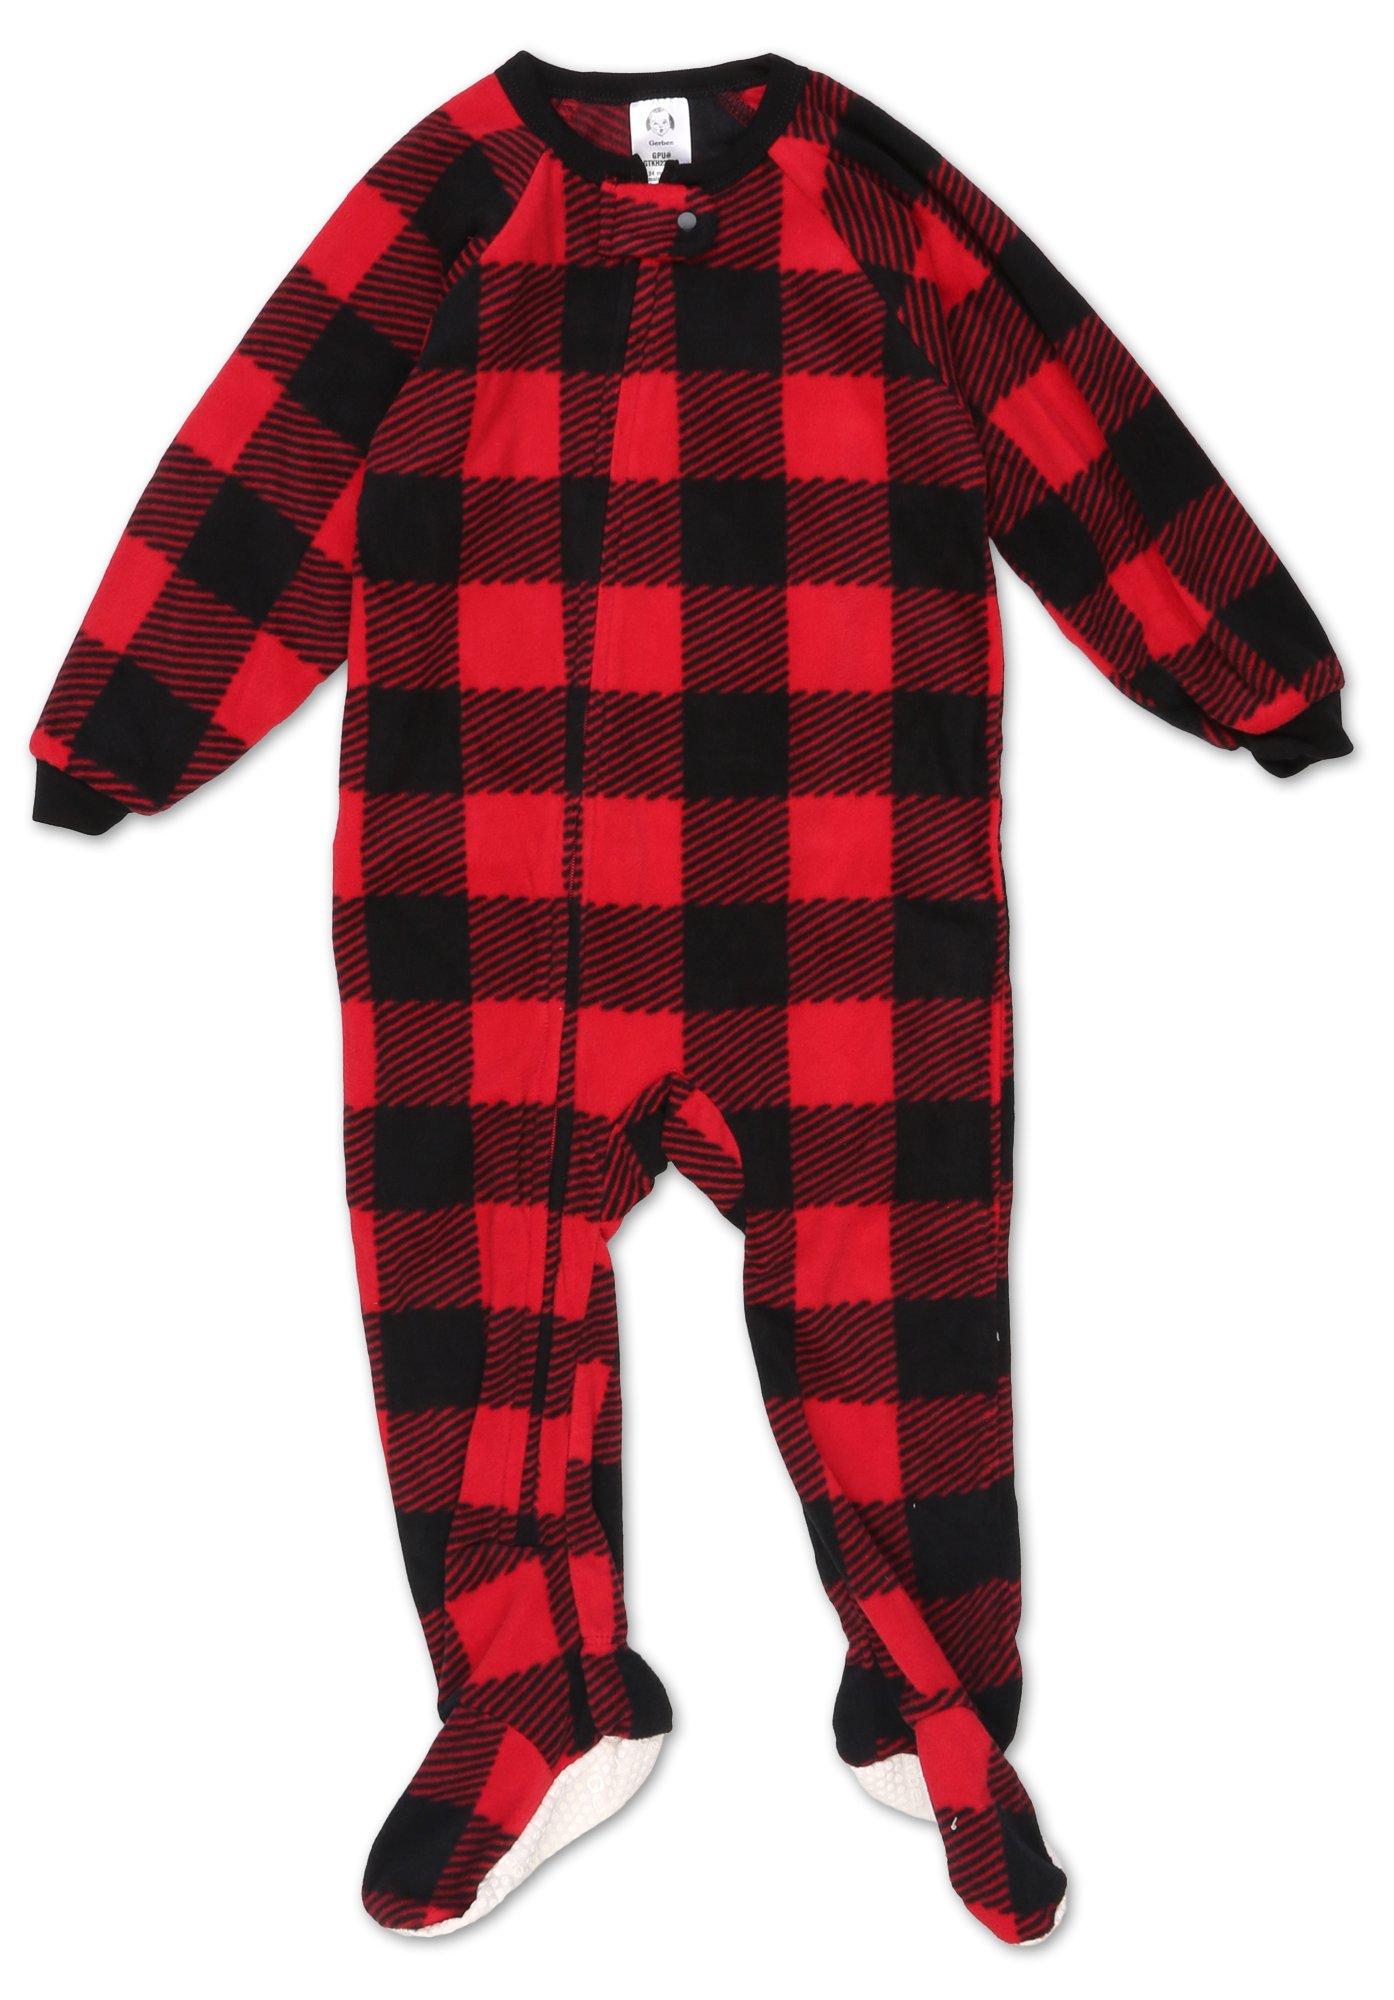 Baby Boys Buffalo Plaid Footed Pajamas - Red/Black